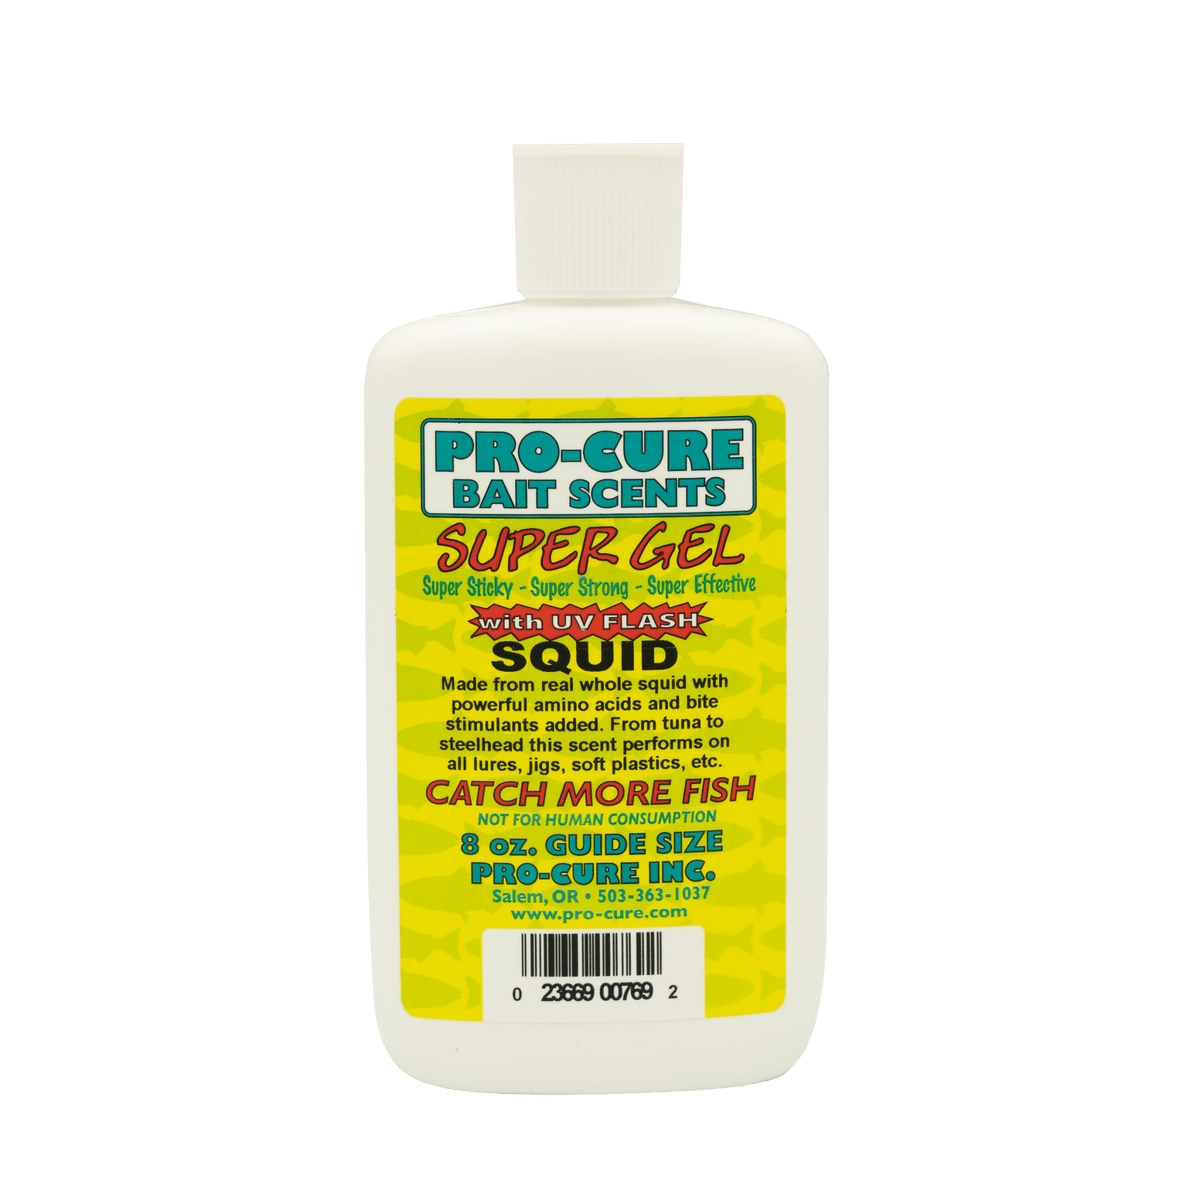 Pro-Cure Bait Scents Super Bait Gels 8oz / Squid